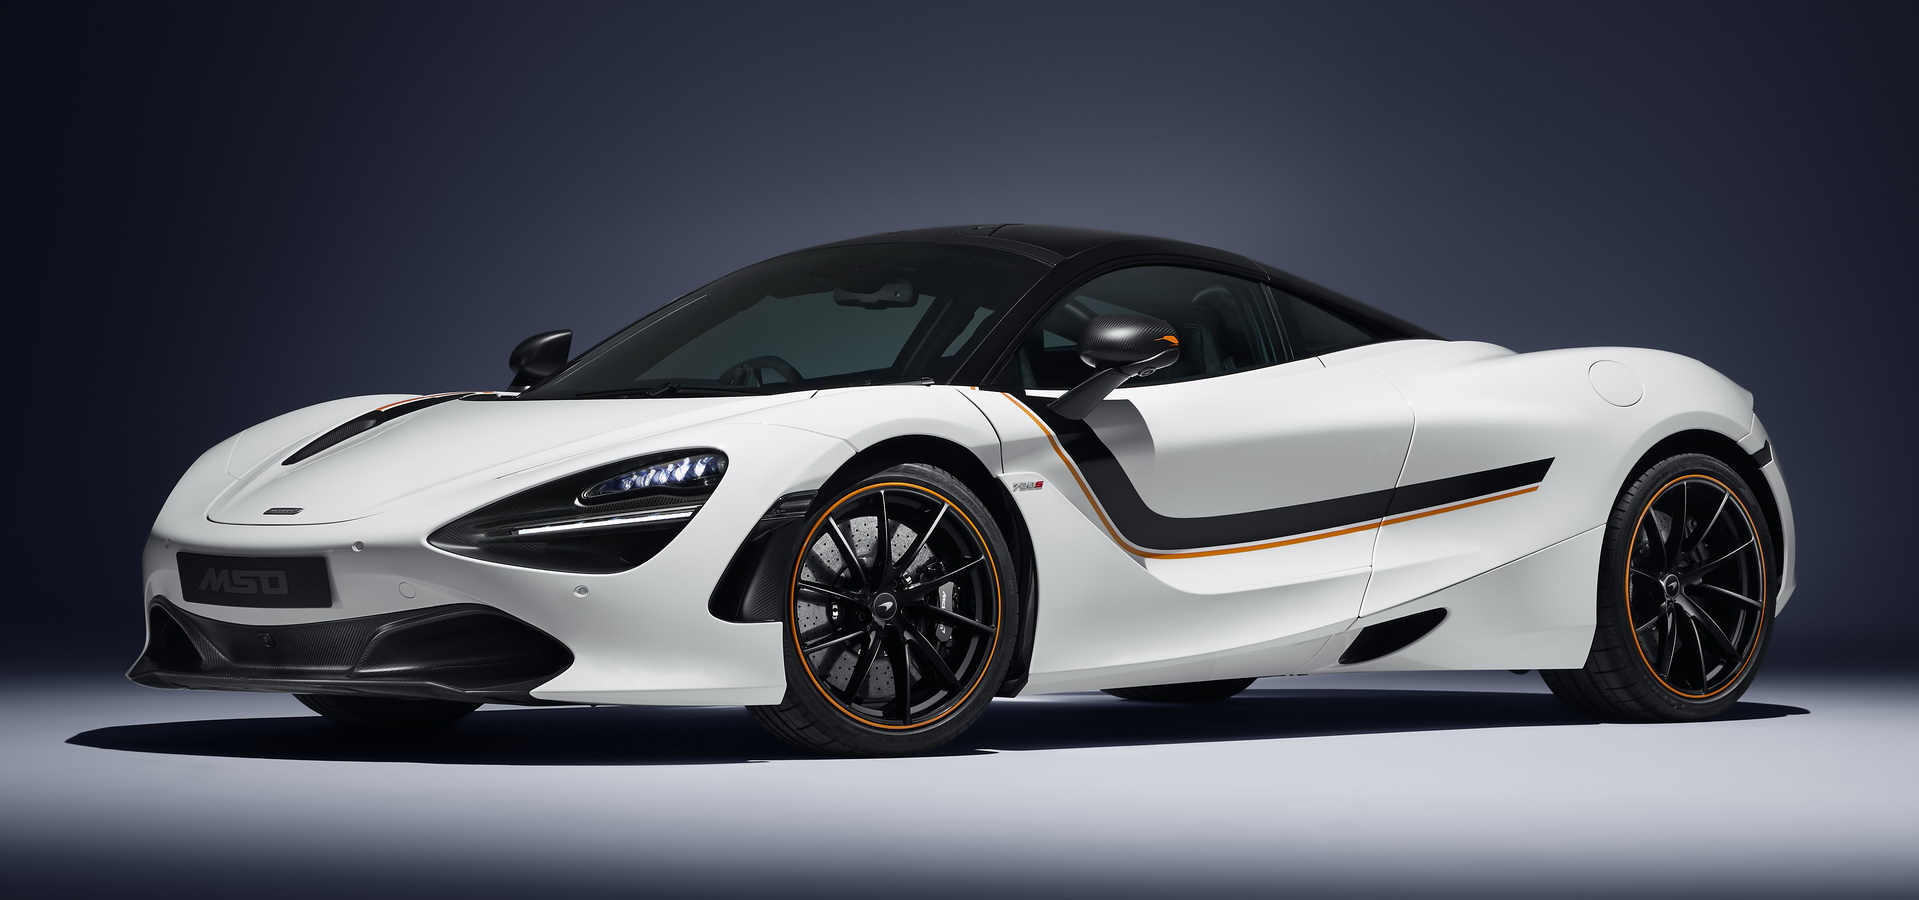 2017 - [McLaren] 720S (P14) - Page 3 0785b14d-mclaren-720s-new-designs-mso-19